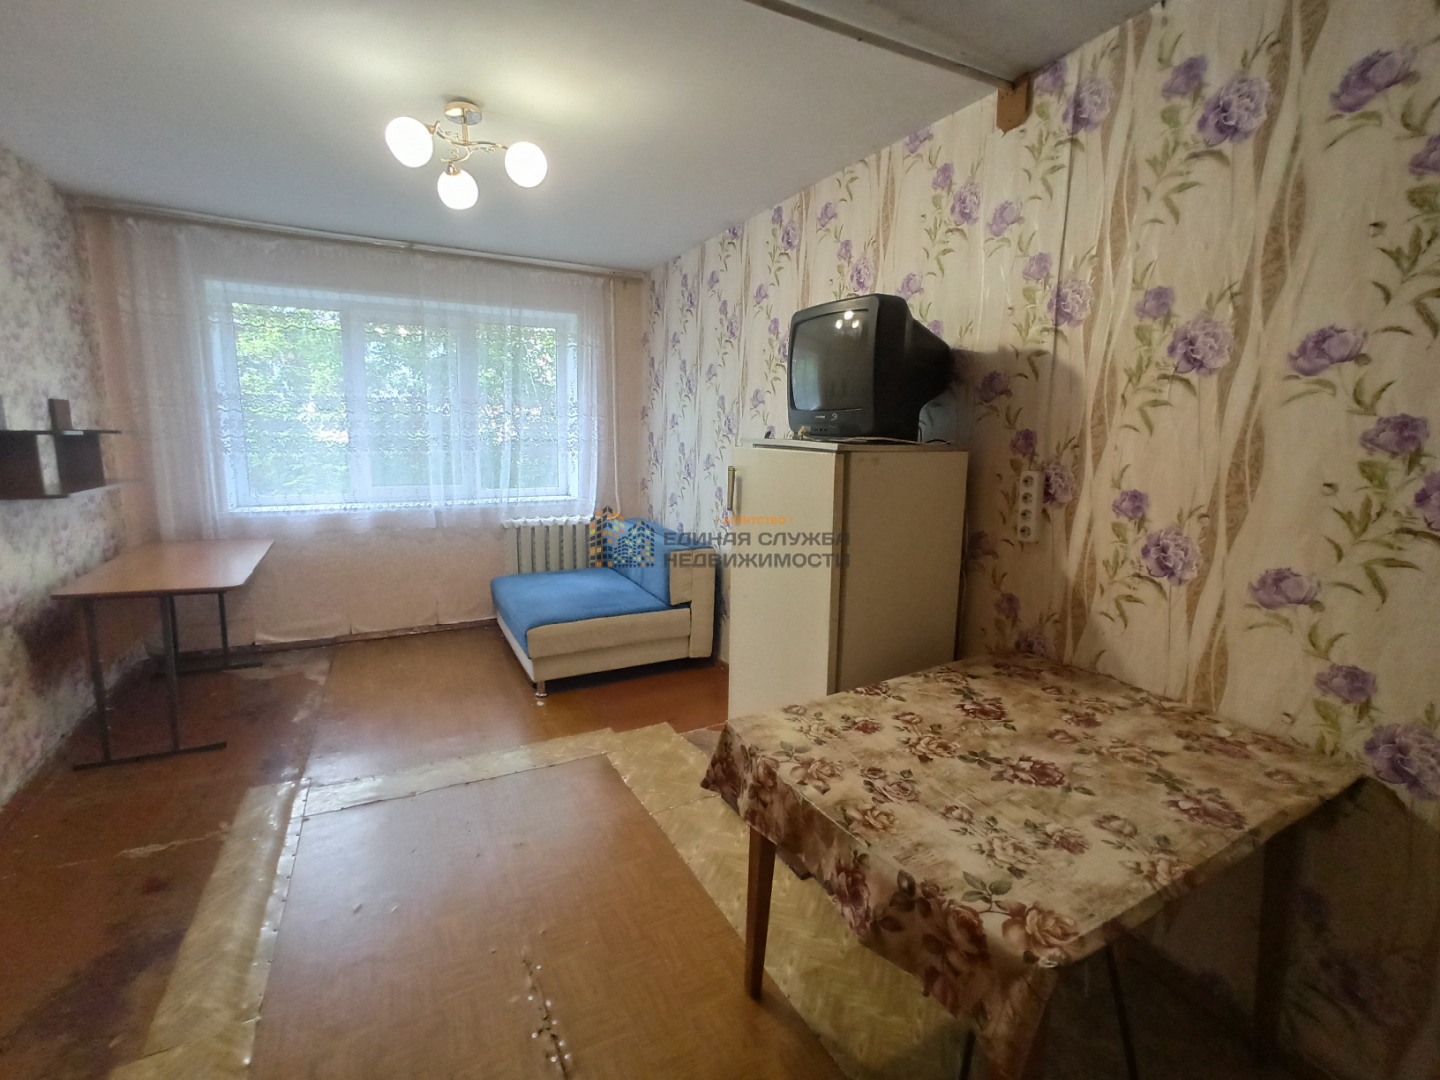 Сдается комната в районе Новоженова, Сипайлово